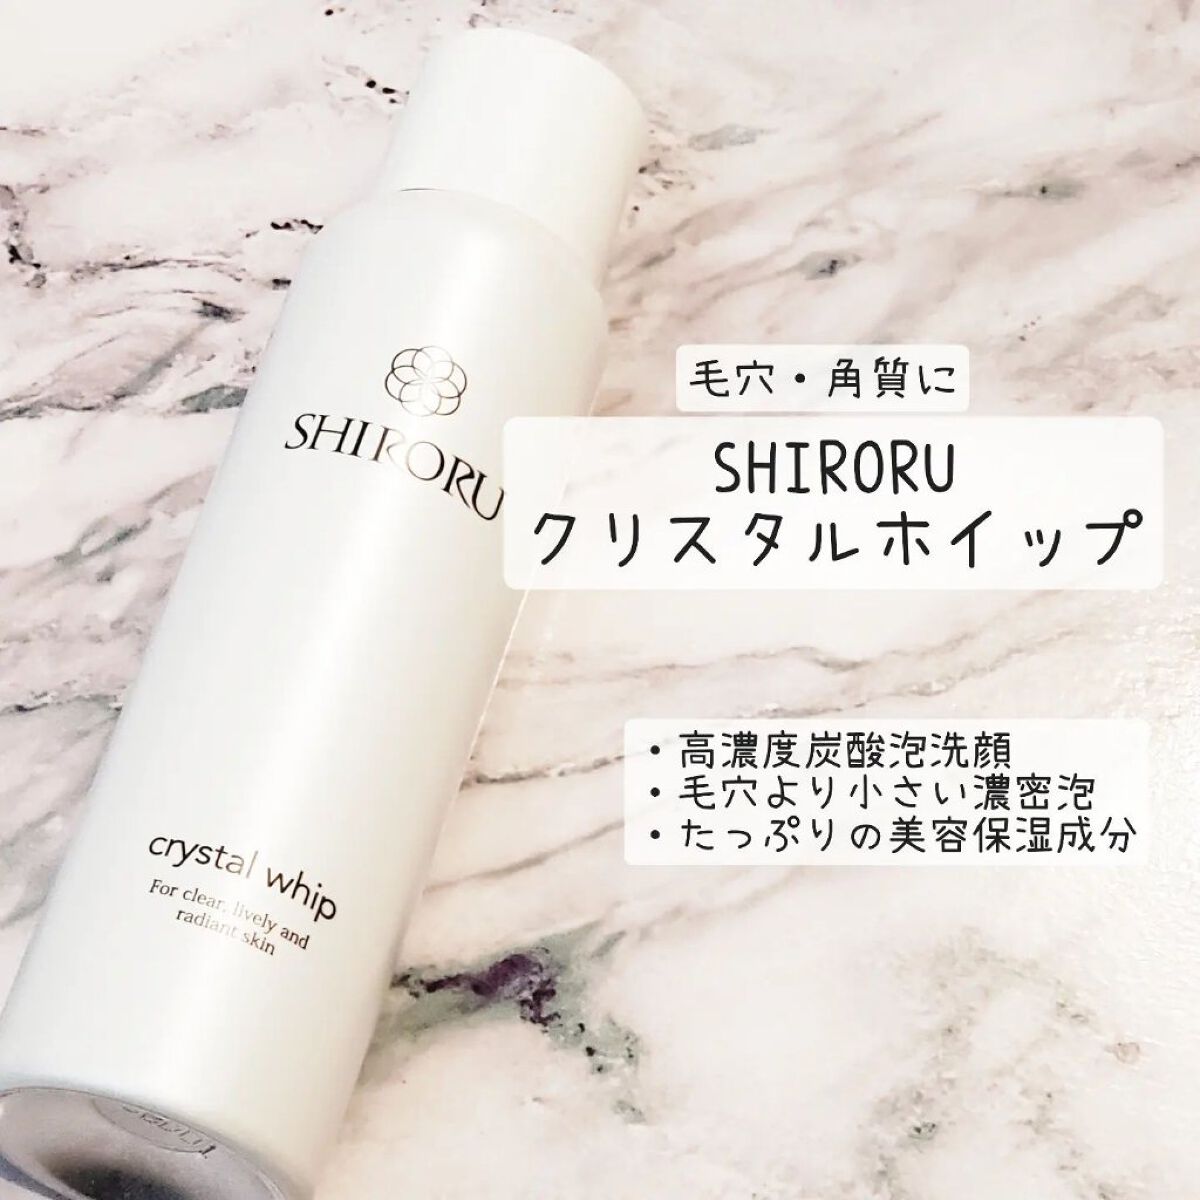 SHIRORU シロル クリスタルホイップ 泡 洗顔 クレンジング セット - 洗顔料